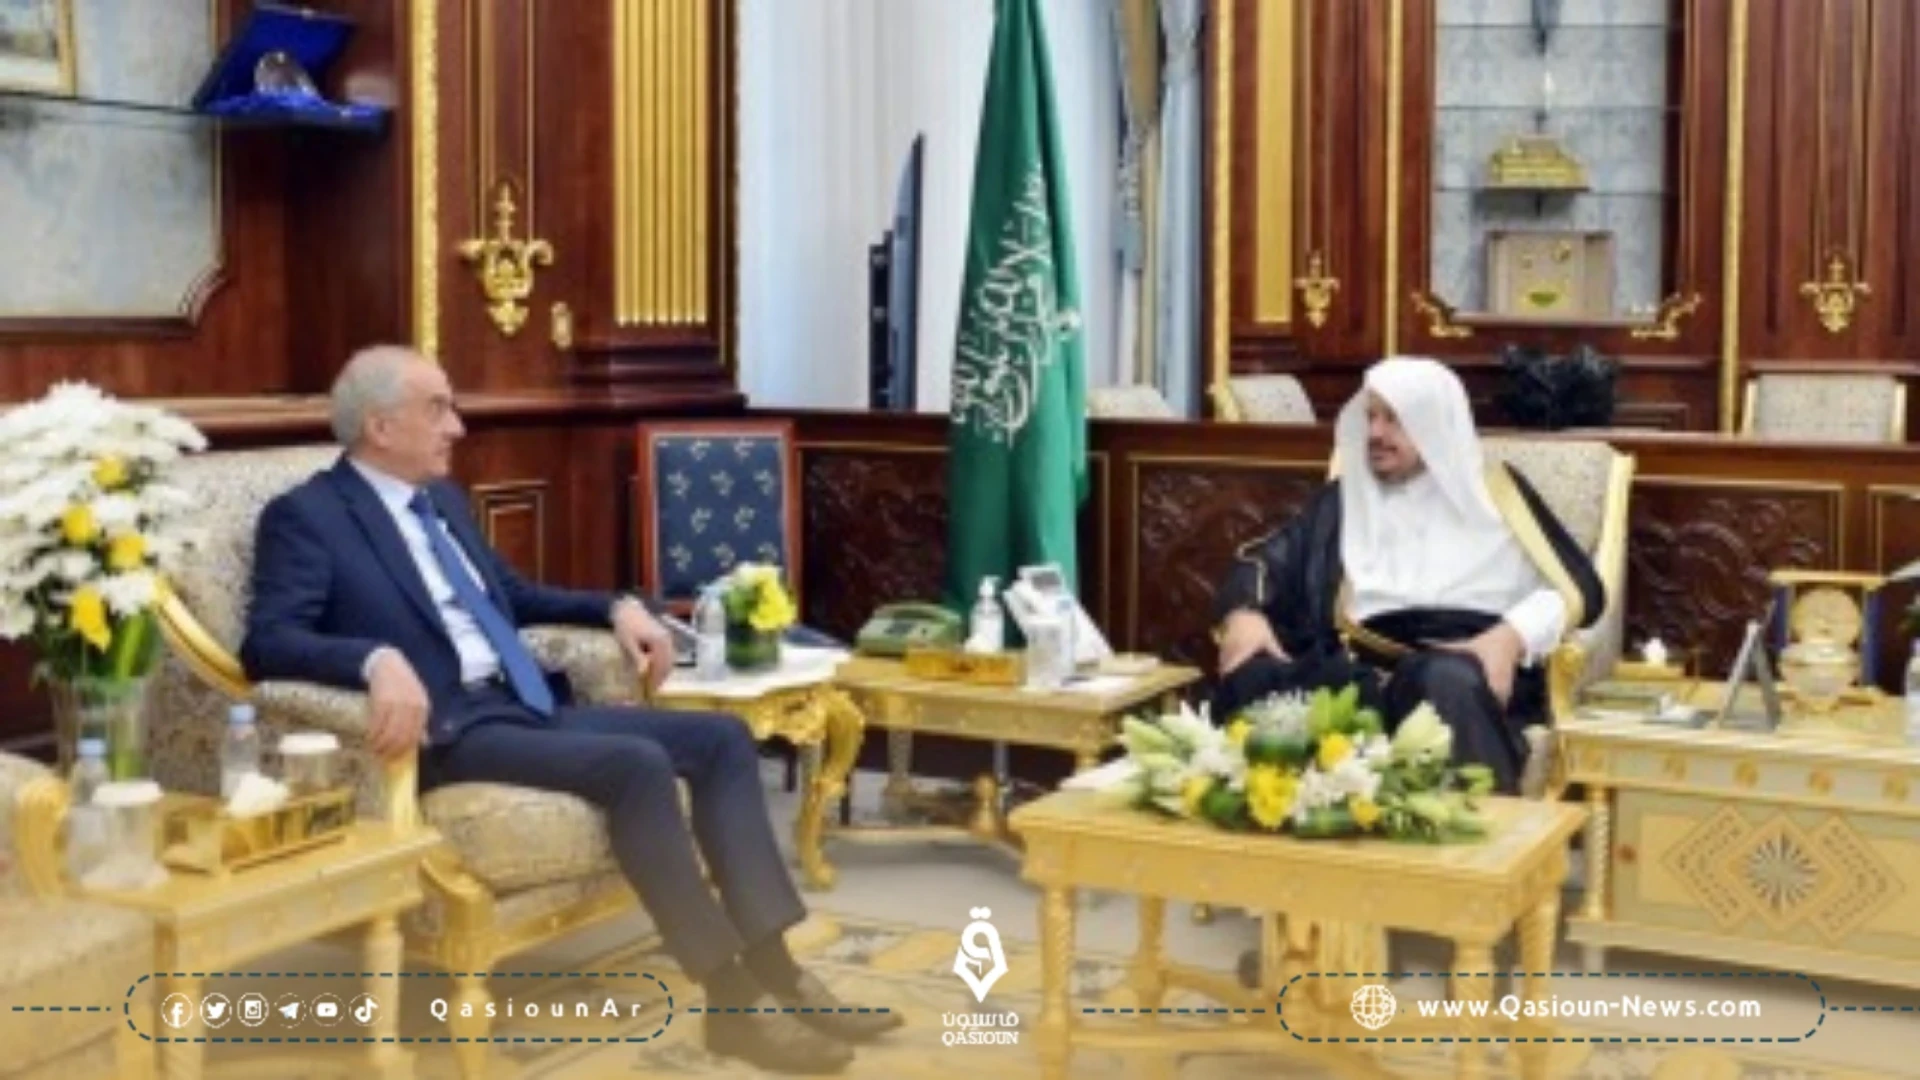 سفير النظام السوري في الرياض يلتقي رئيس مجلس الشورى السعودي